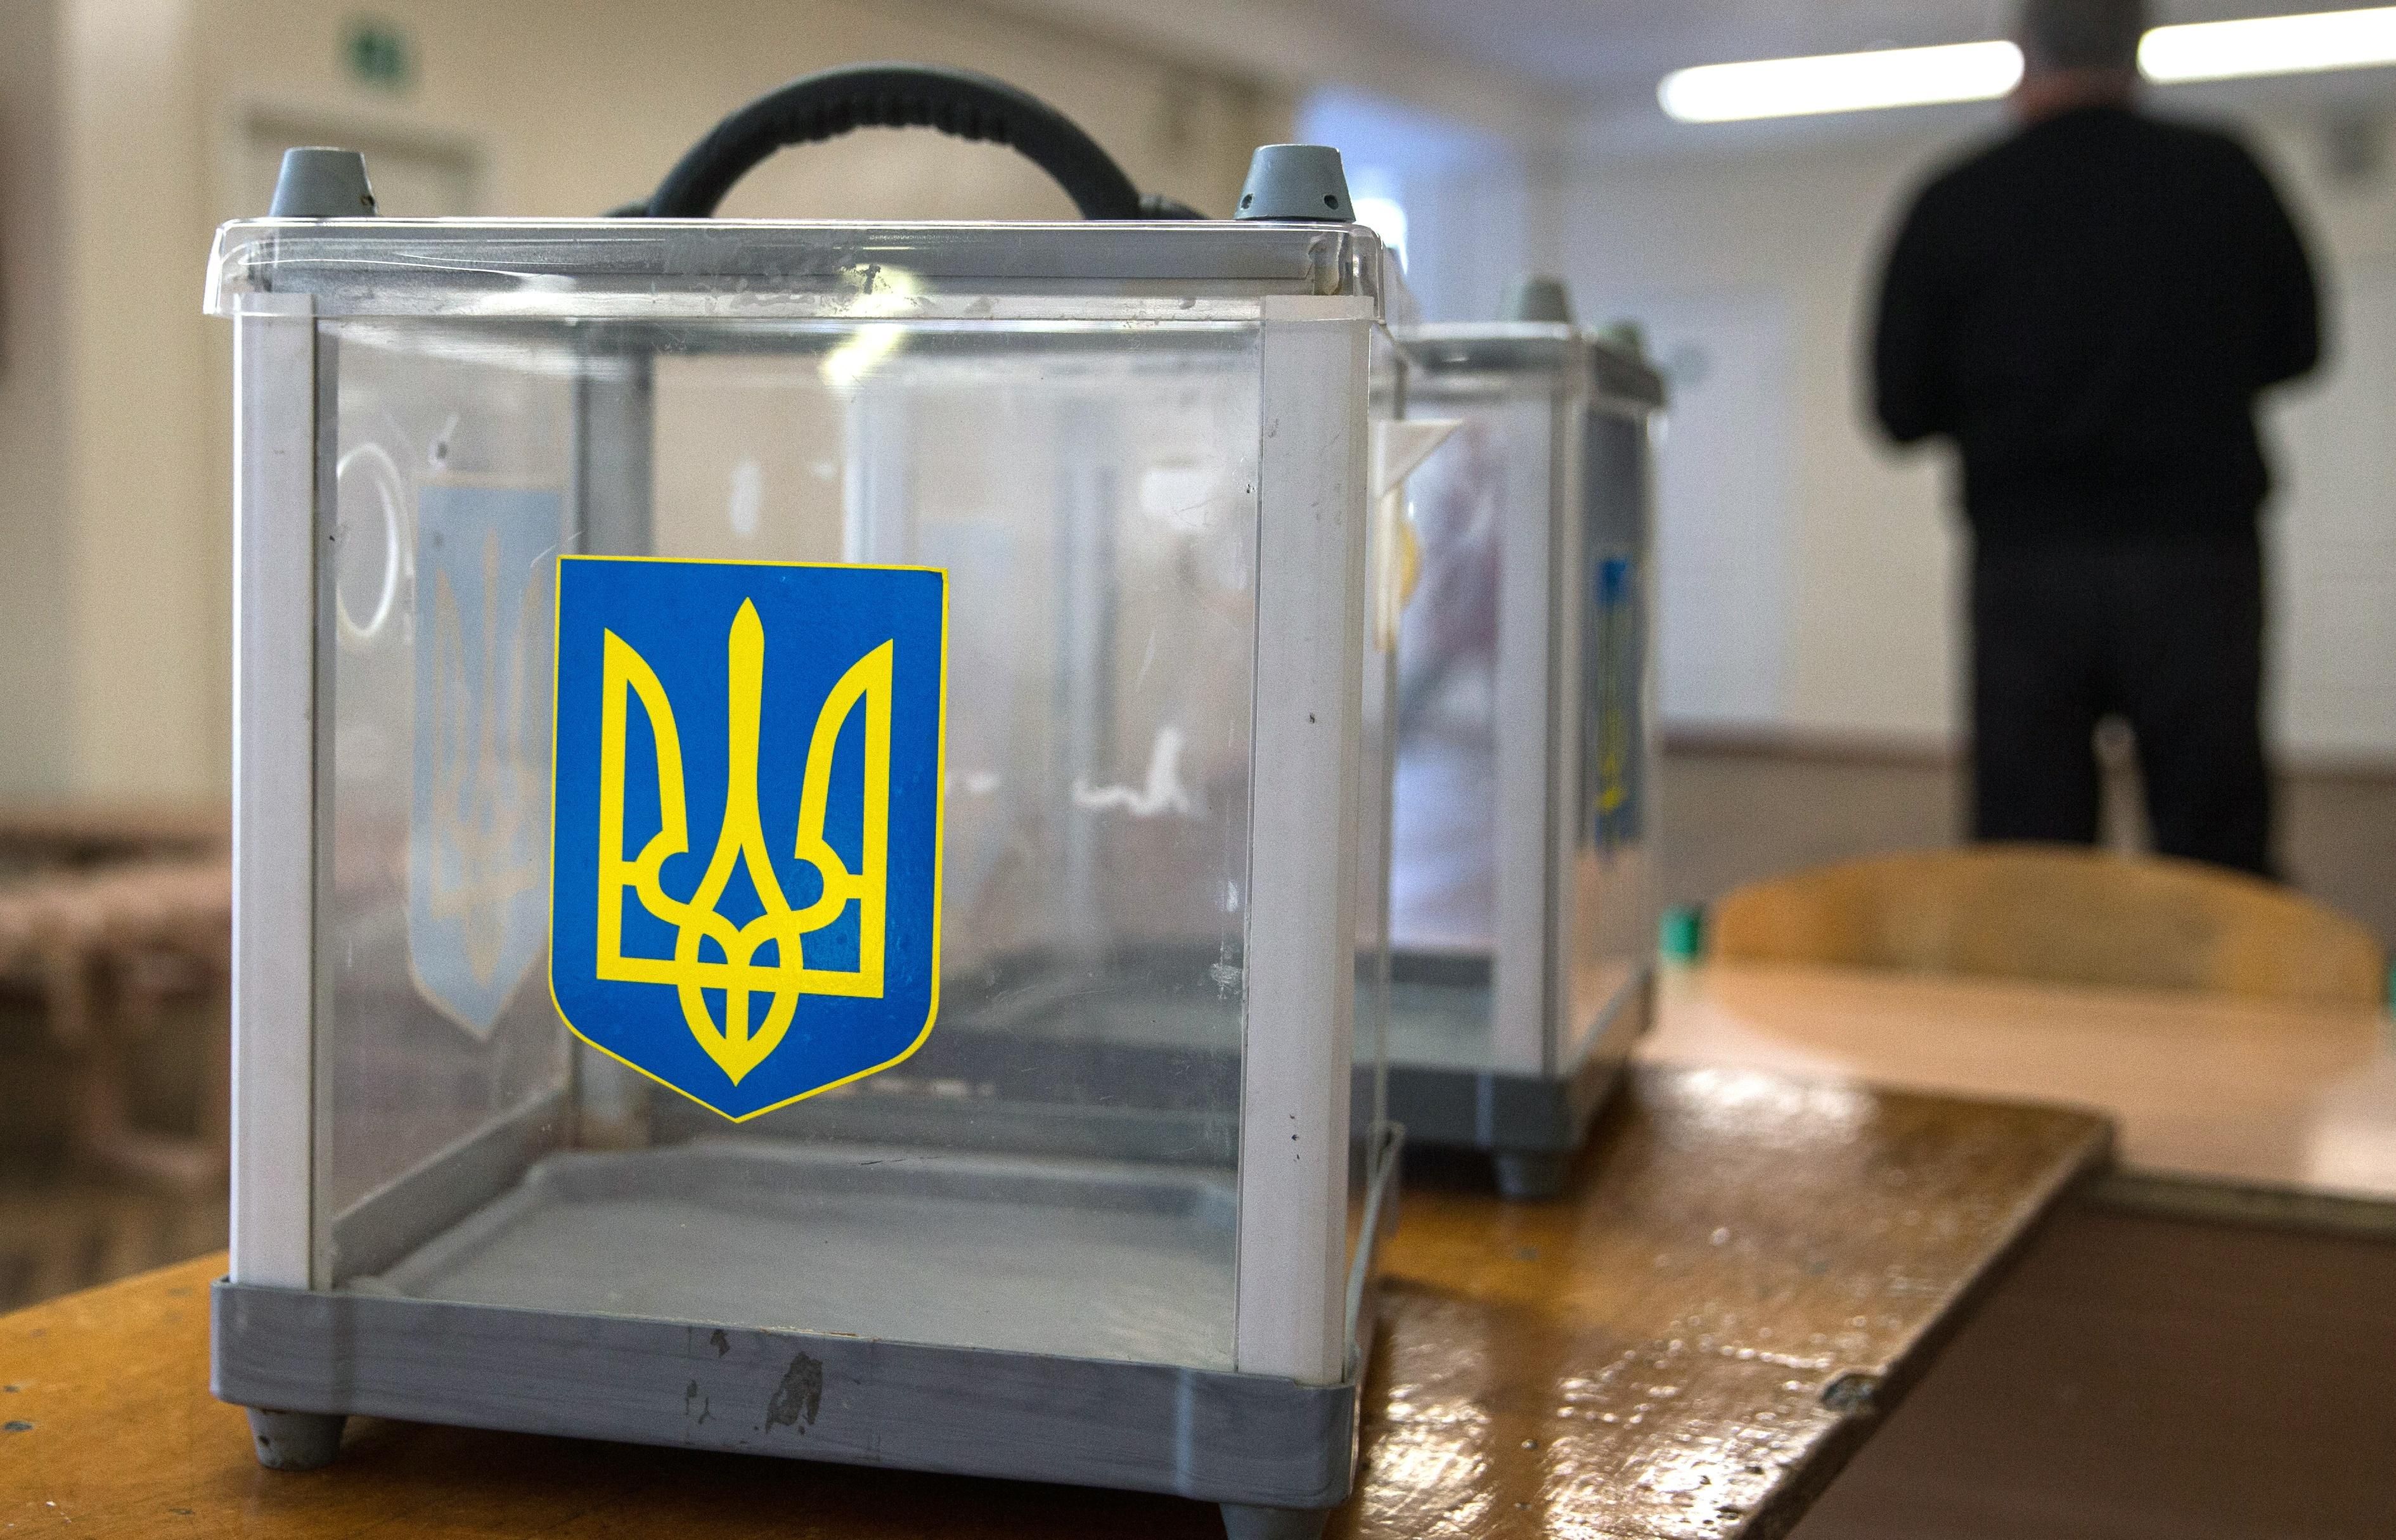 Скільки Україні коштуватимуть вибори 2019: ЦВК затвердила кошторис  - 3 января 2019 - Телеканал новостей 24